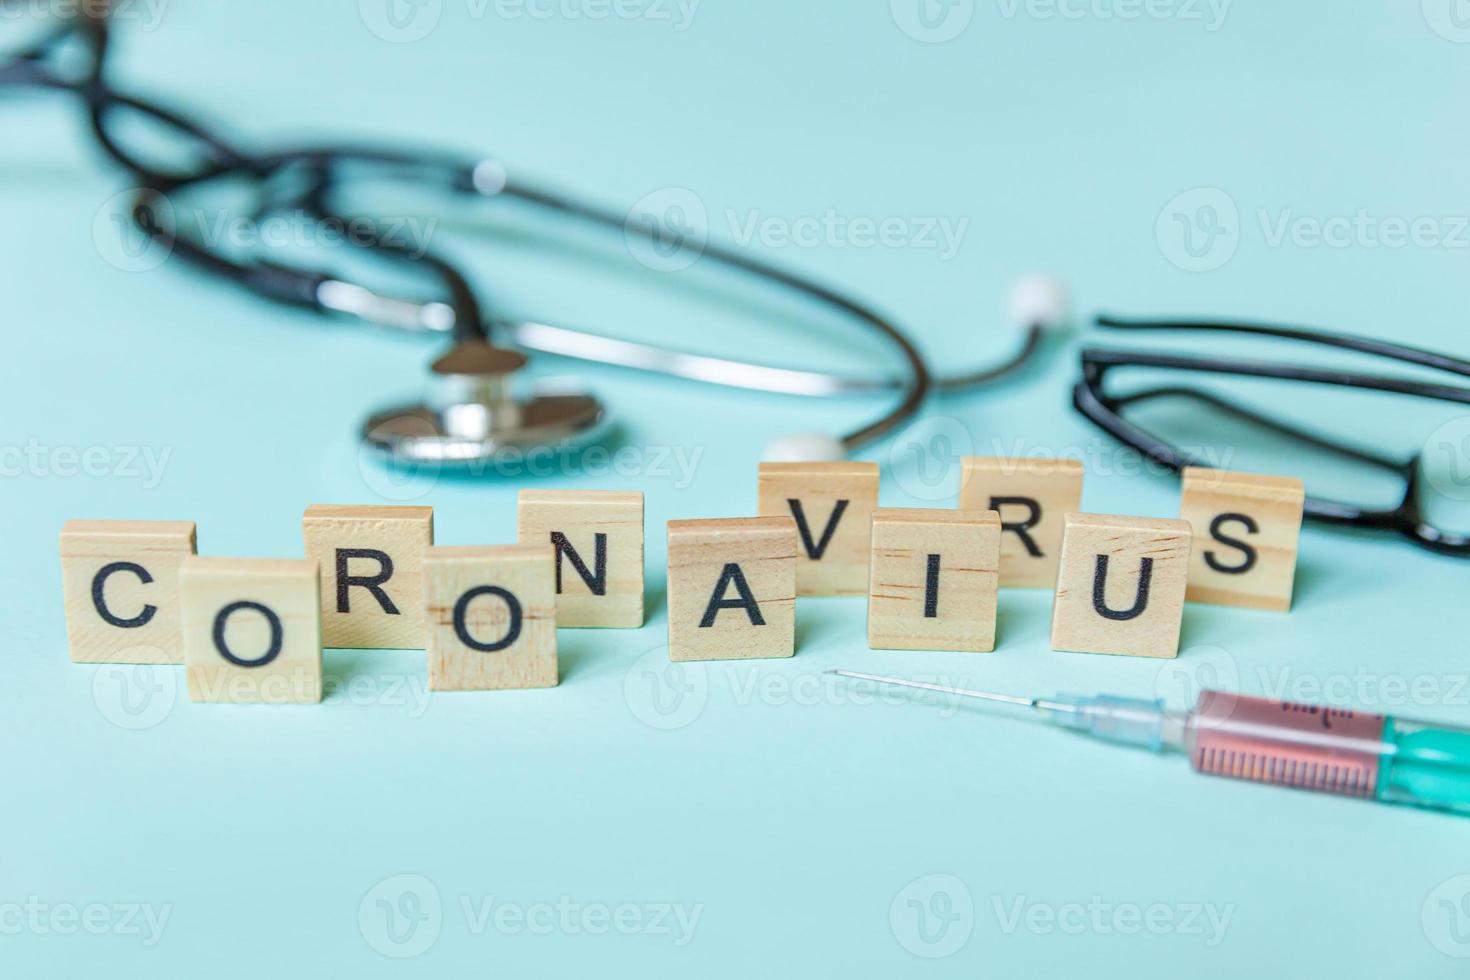 expression de texte coronavirus seringue lunettes et stéthoscope sur fond bleu pastel. nouveau coronavirus 2019-ncov mers-cov covid-19 concept de vaccin contre le virus du coronavirus du syndrome respiratoire du moyen-orient. photo